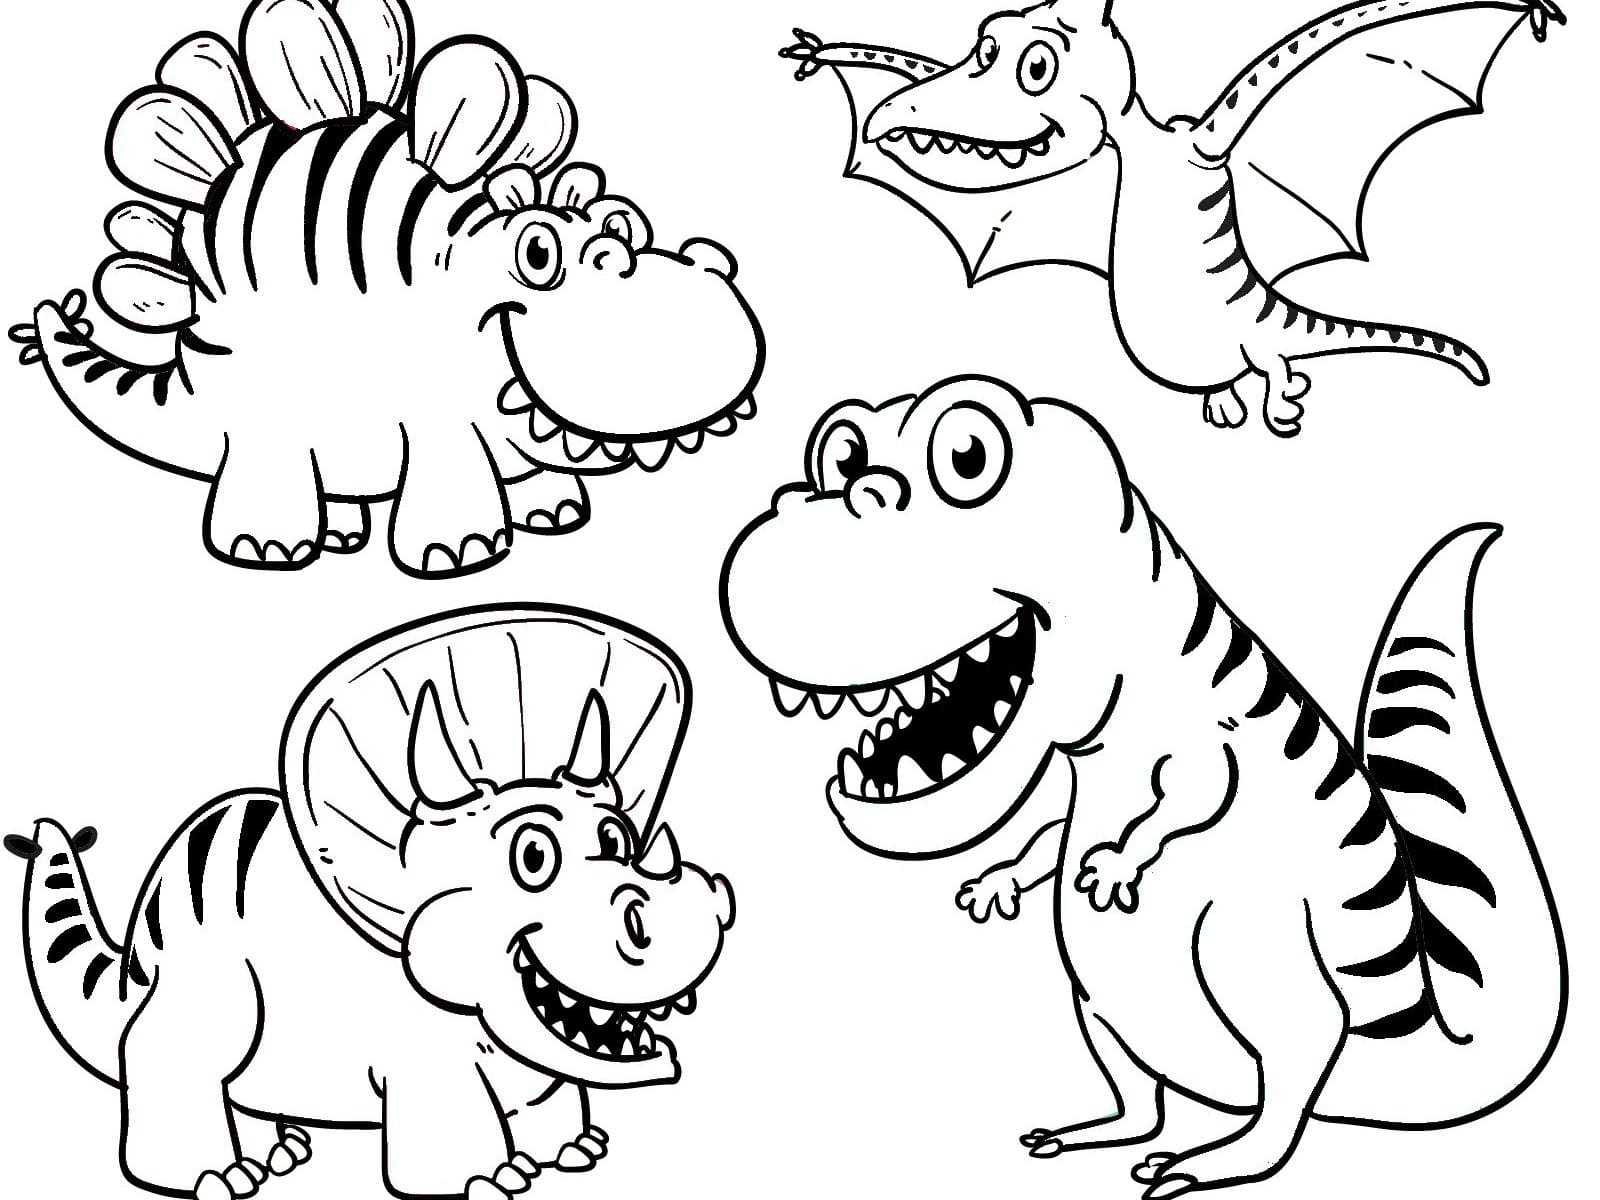 Эпохи в истории земли: динозавры, эры и периоды